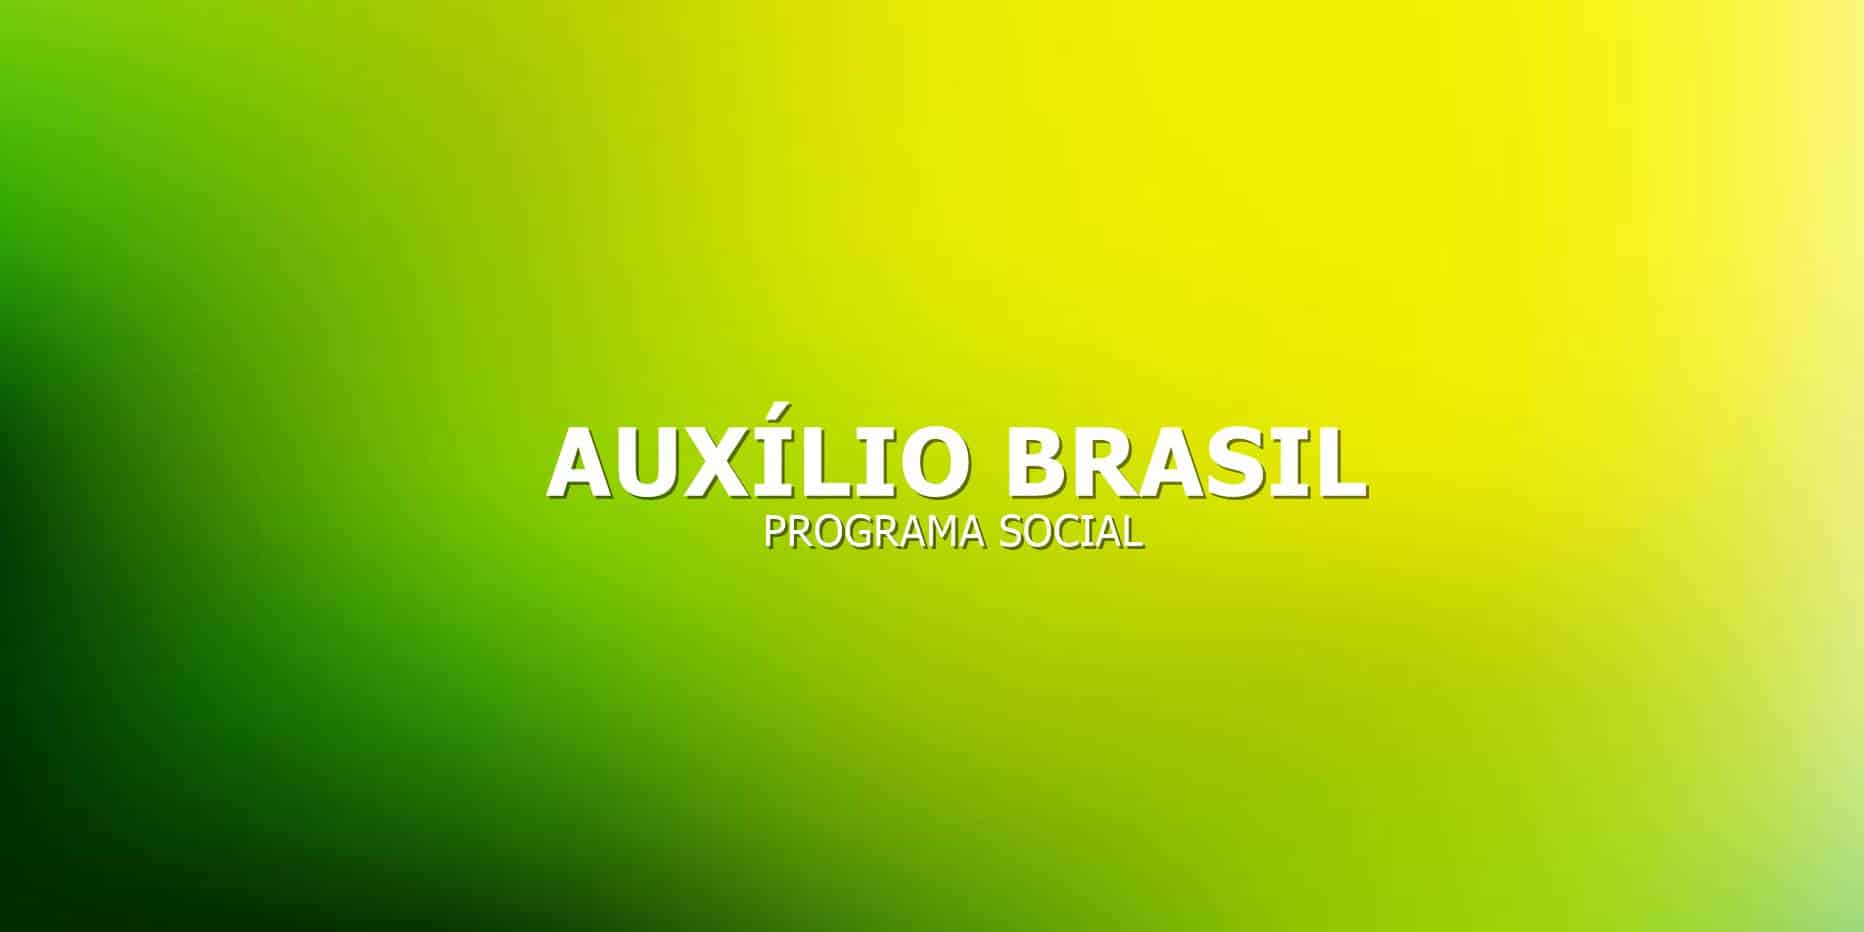 vamos lhe mostrar 9 benefícios que o Auxilio Brasil oferece e que pode aumentar a sua renda.